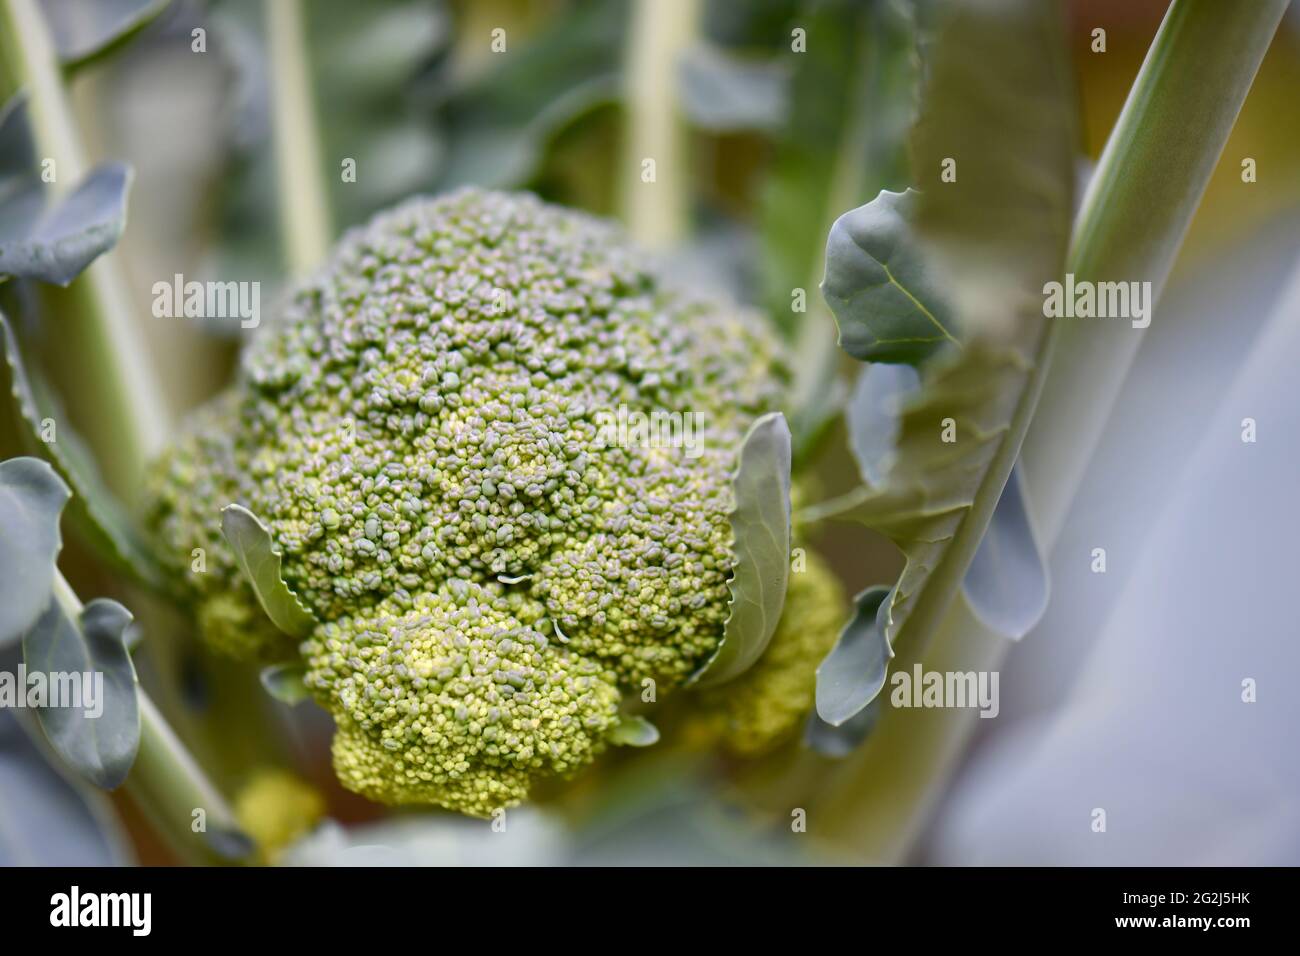 schöne grosse Brocolirose in einem Hochbeet wachsend Stock Photo